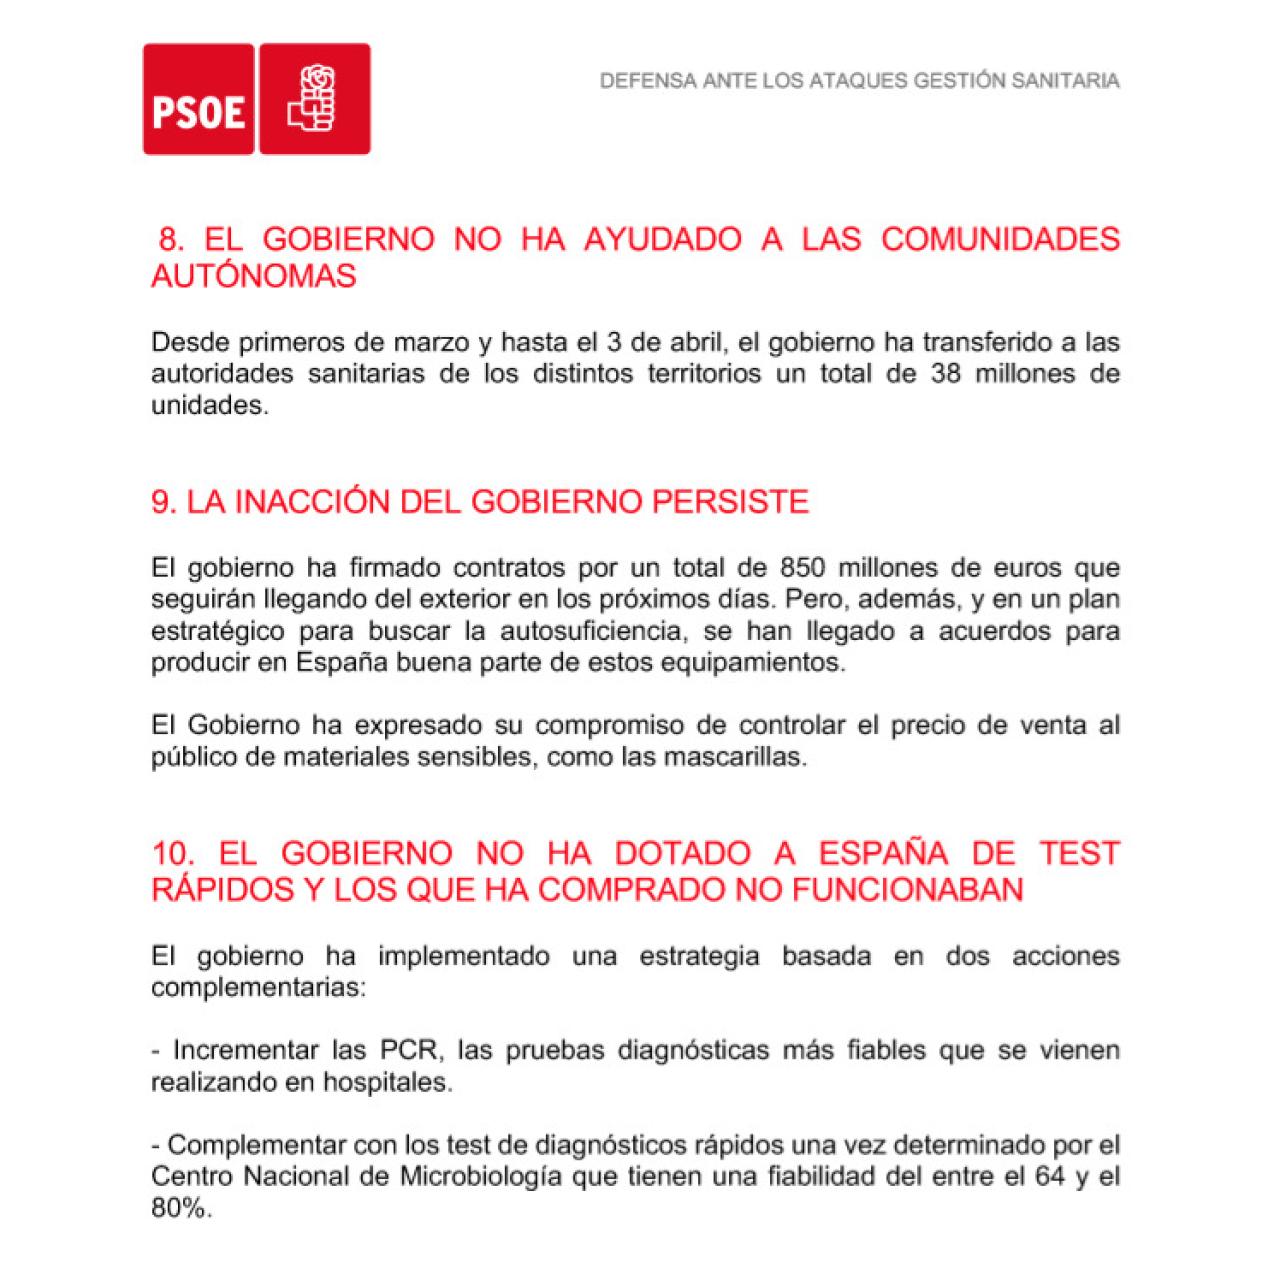 Documento oficial PSOE para confrontar los argumentos en la crisis sanitaria.